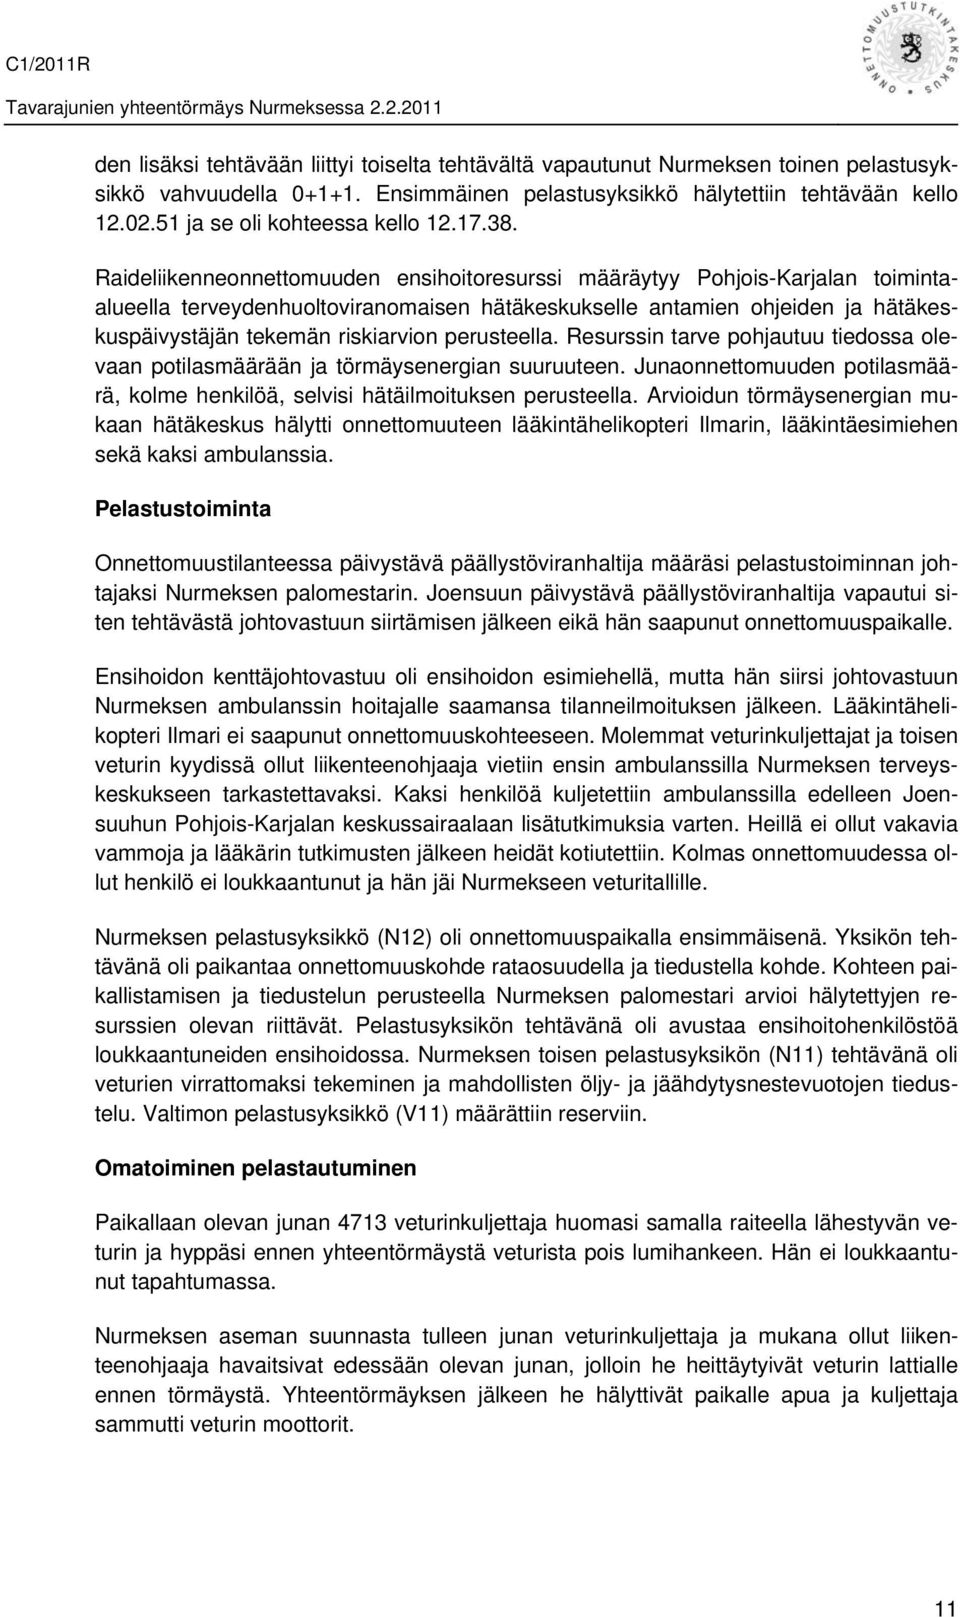 Raideliikenneonnettomuuden ensihoitoresurssi määräytyy Pohjois-Karjalan toimintaalueella terveydenhuoltoviranomaisen hätäkeskukselle antamien ohjeiden ja hätäkeskuspäivystäjän tekemän riskiarvion